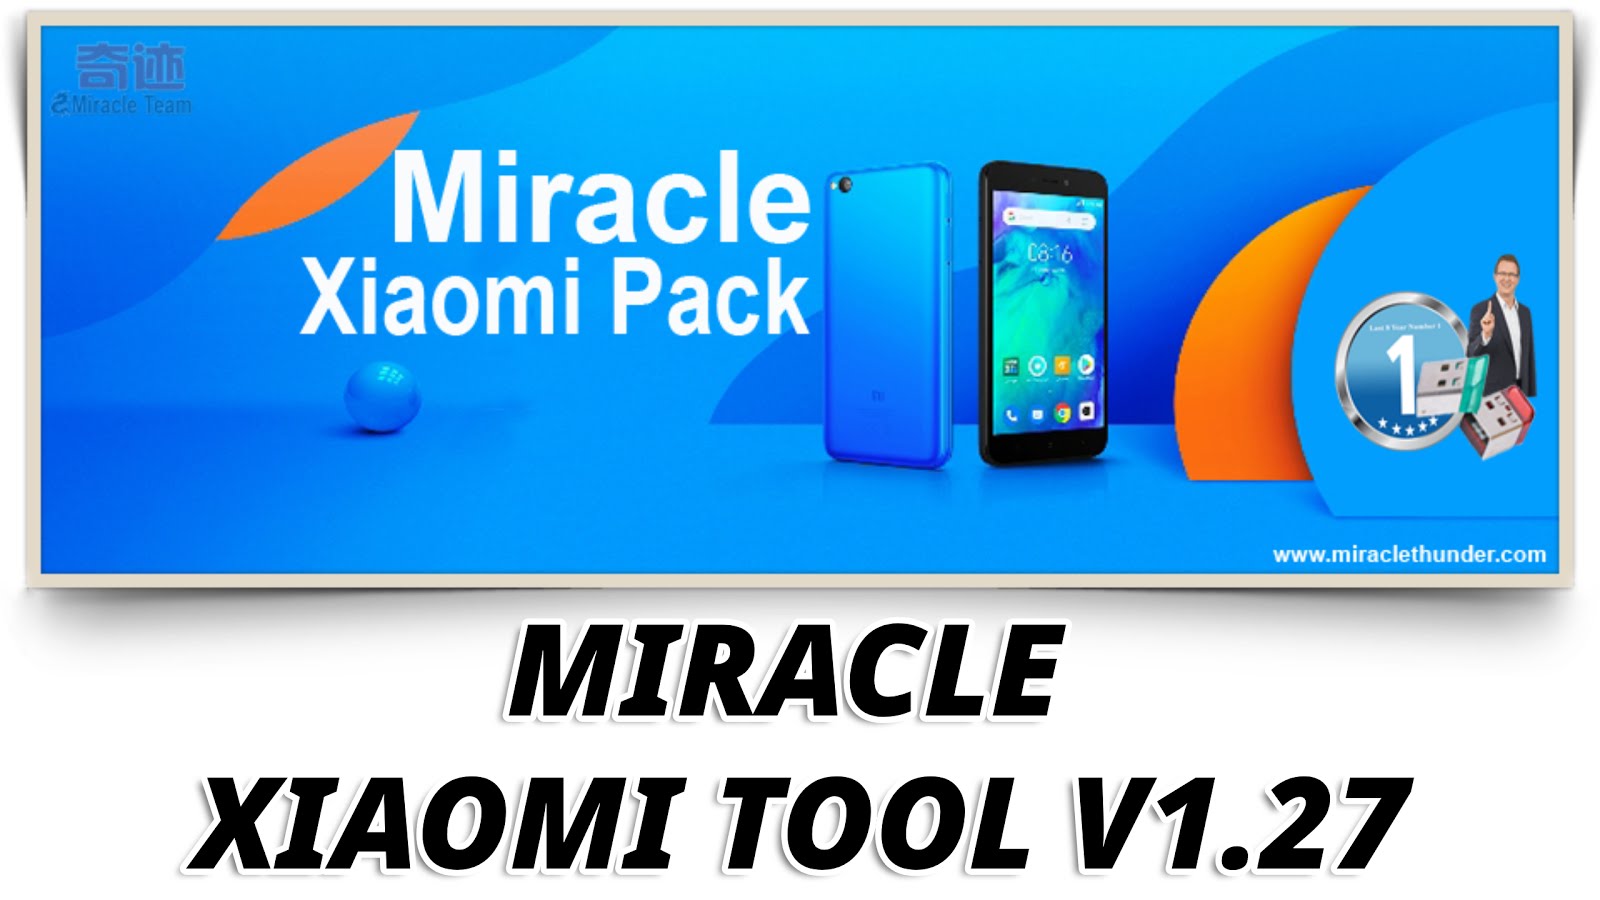 Miracle Xiaomi Tool Libusb0 Dll